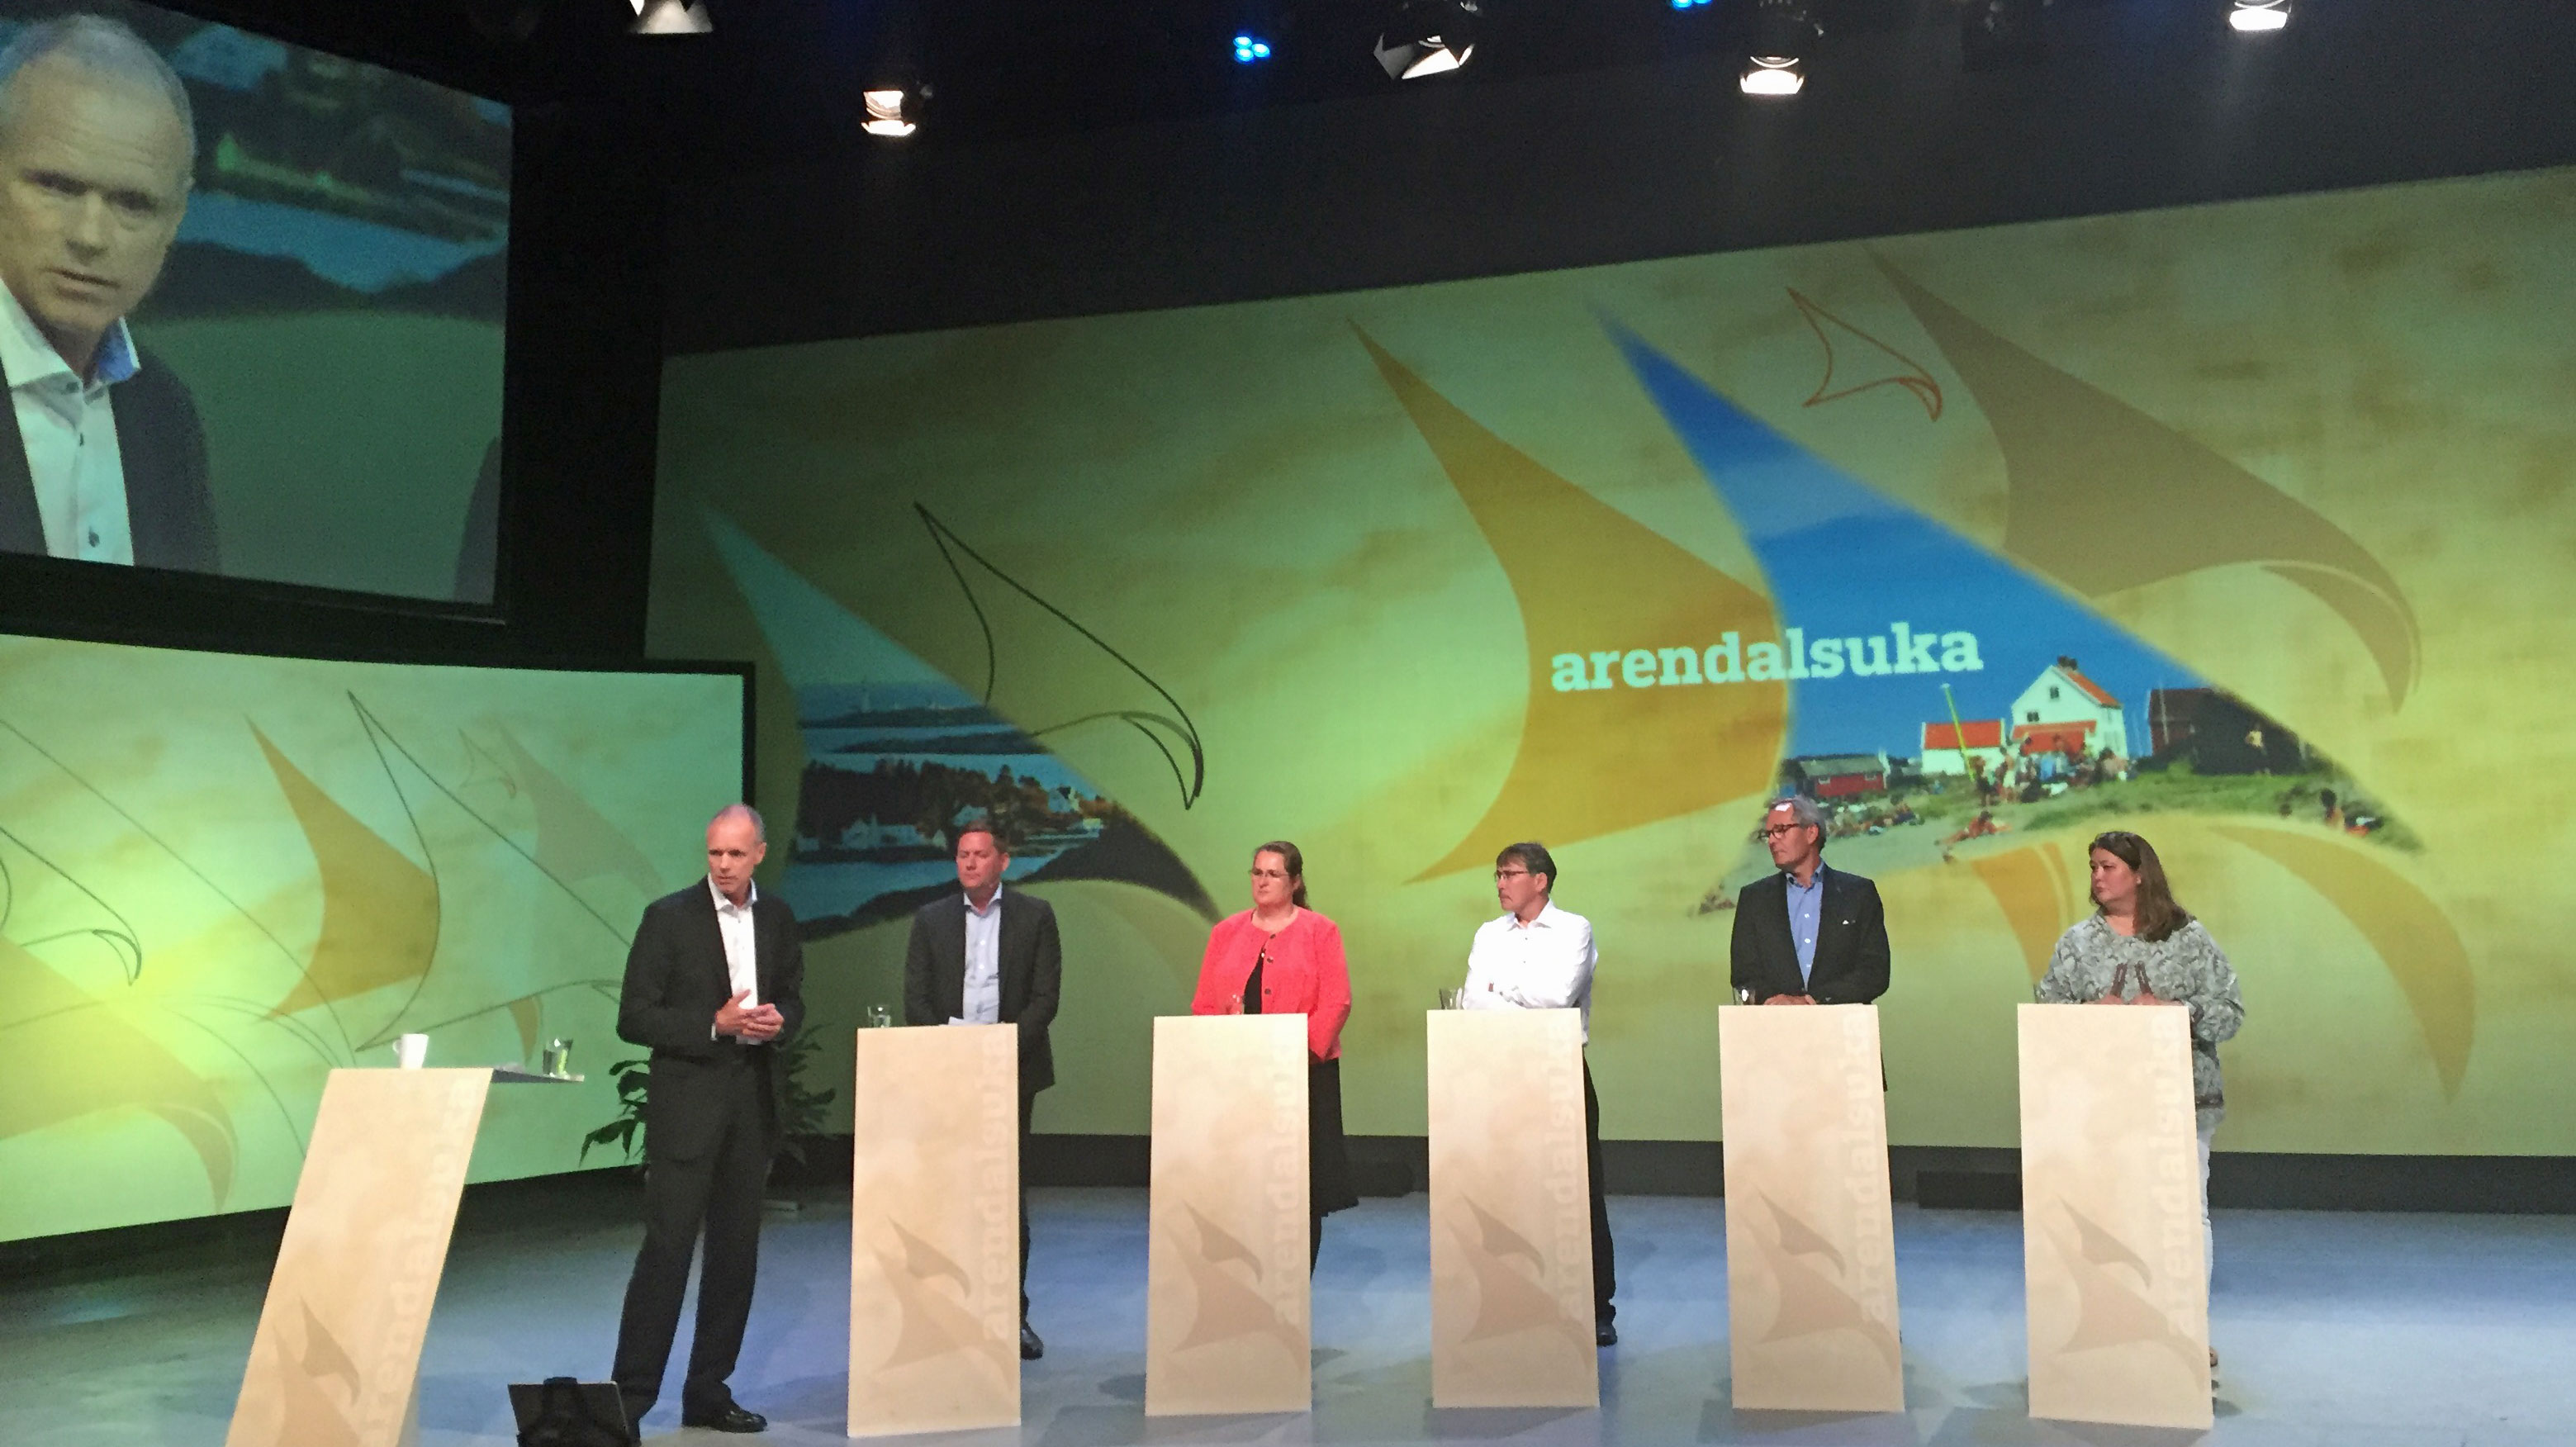 Næringslivspanelet under arktisk debatt i Arendalsuka 2016